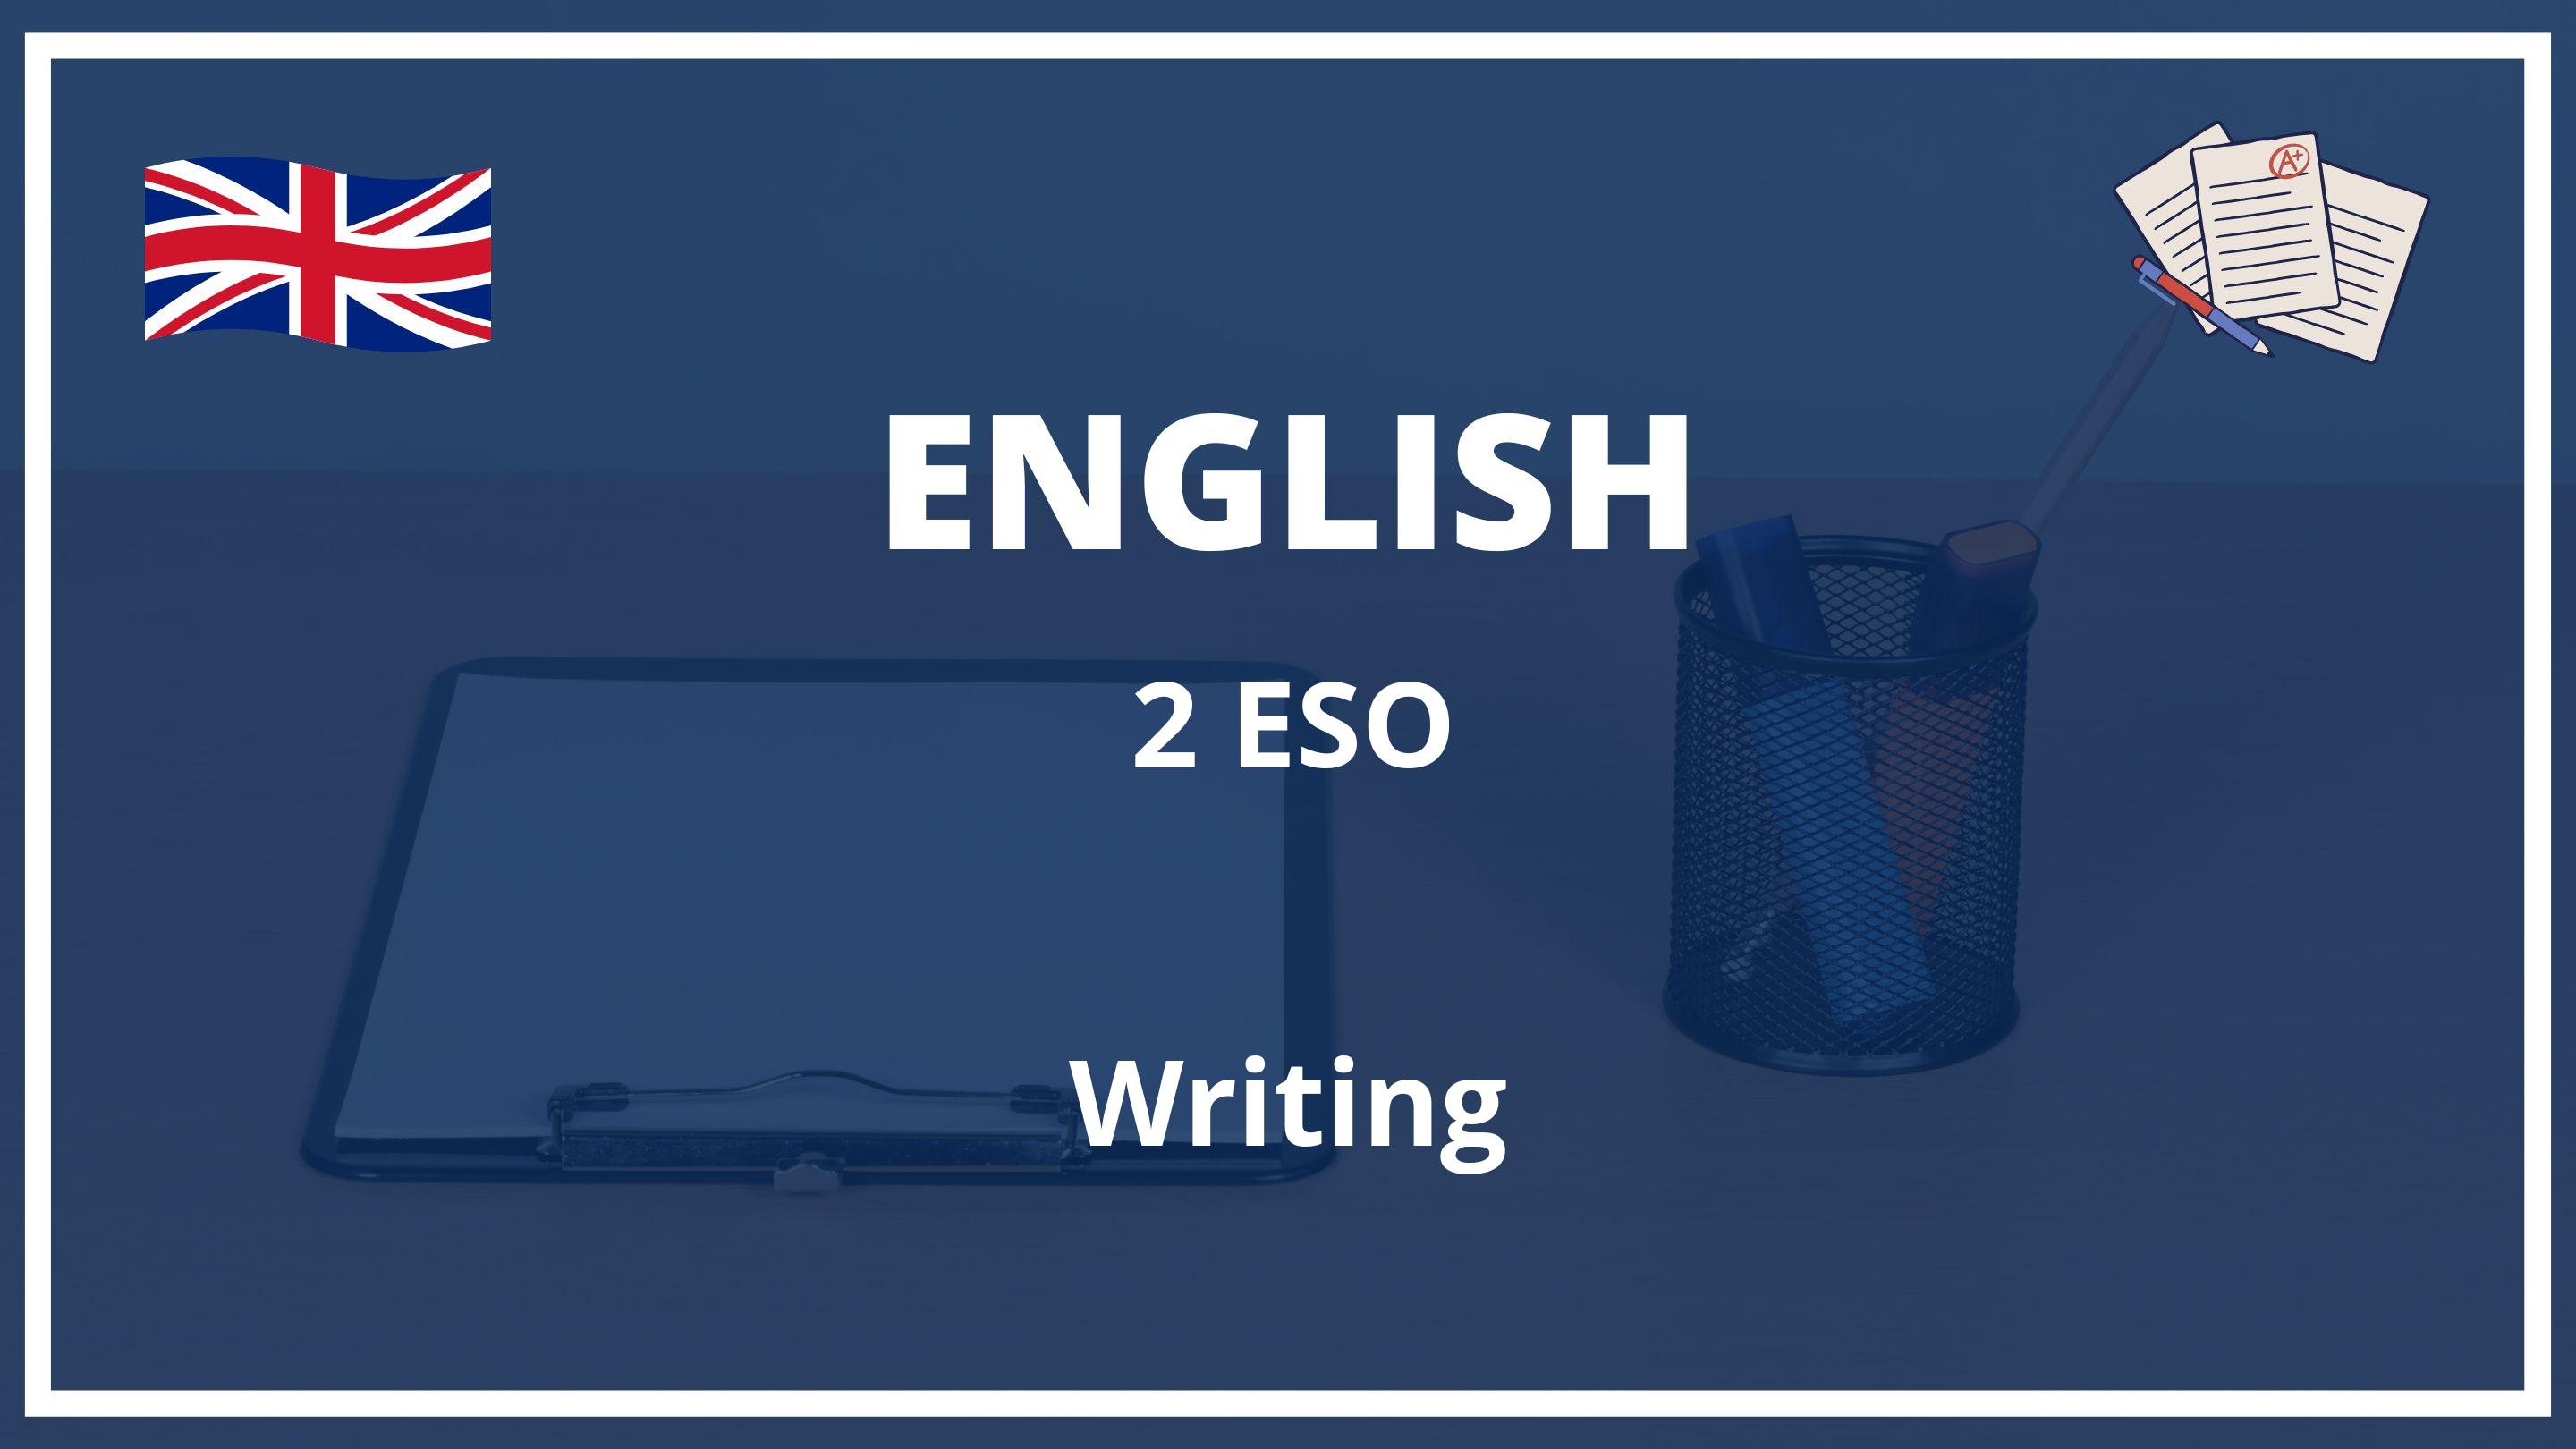 Writing 2 ESO